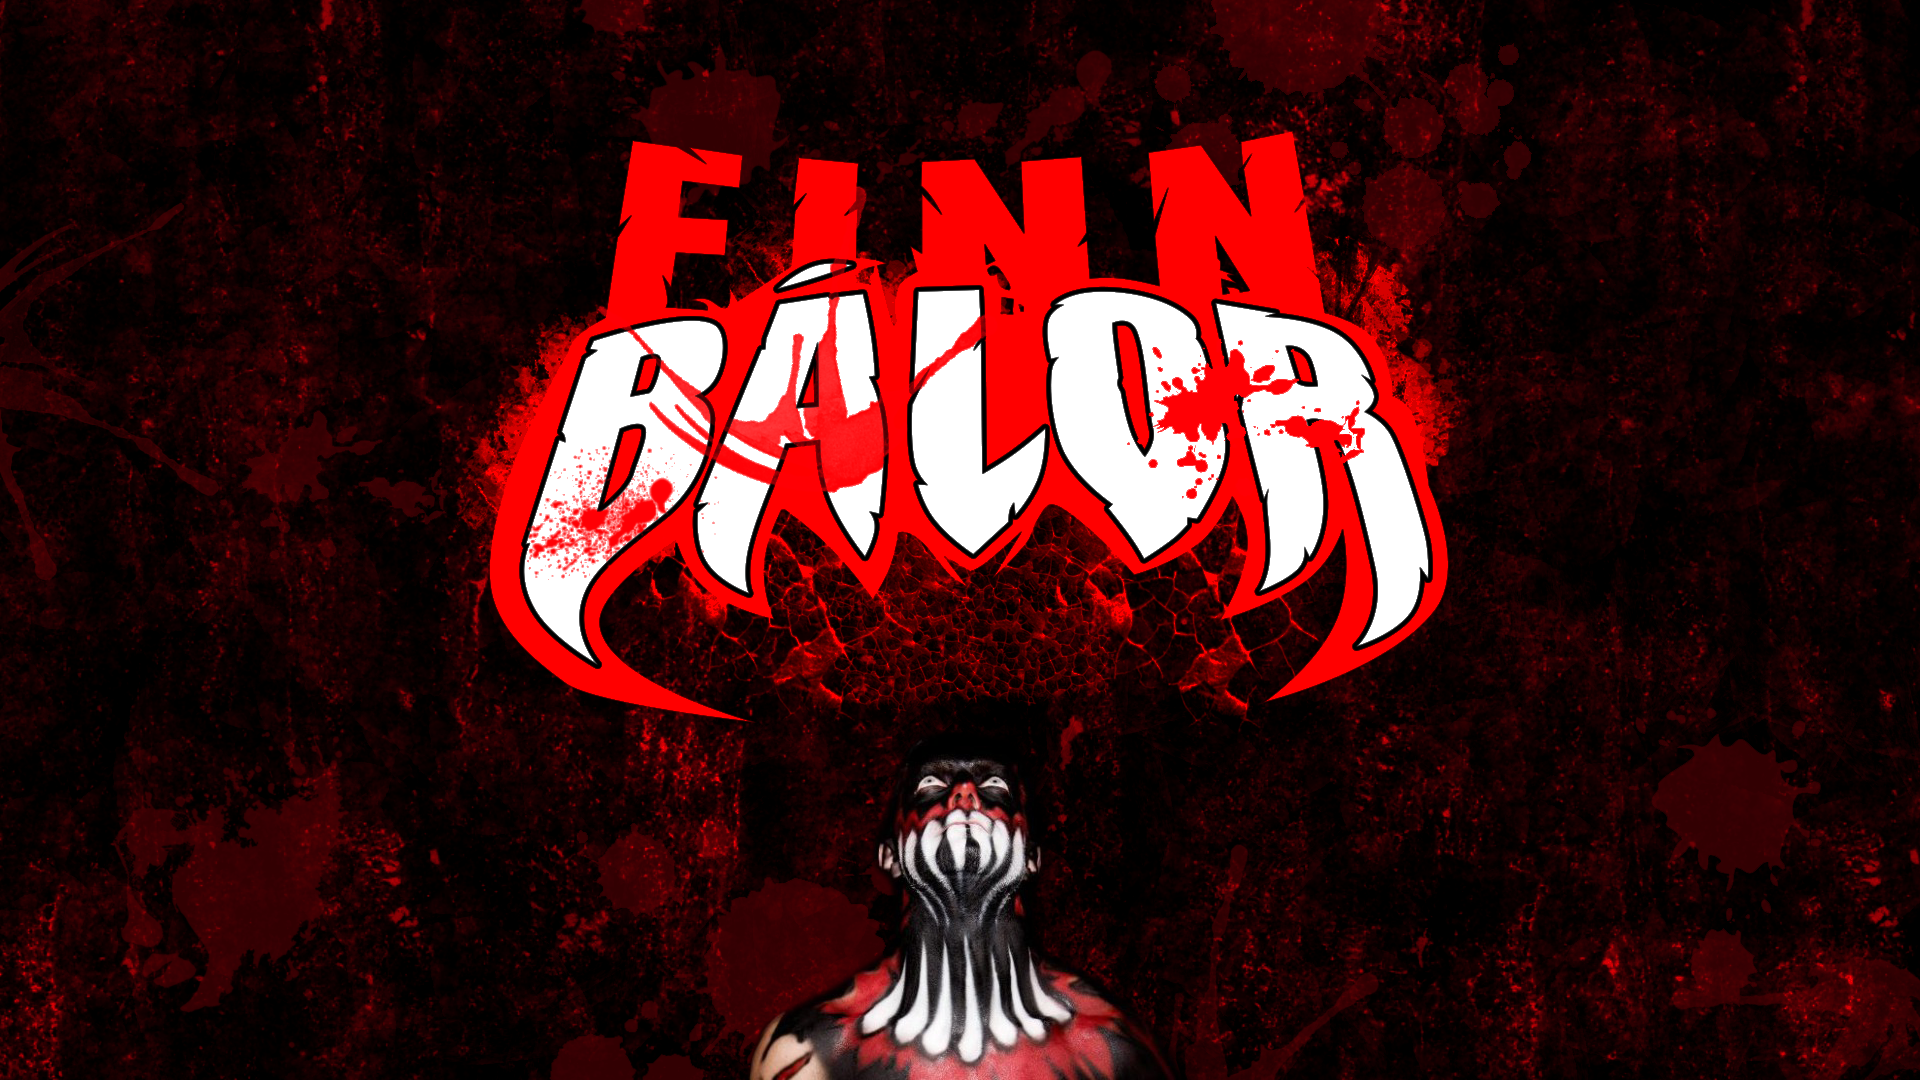 Finn Balor Wallpaper X